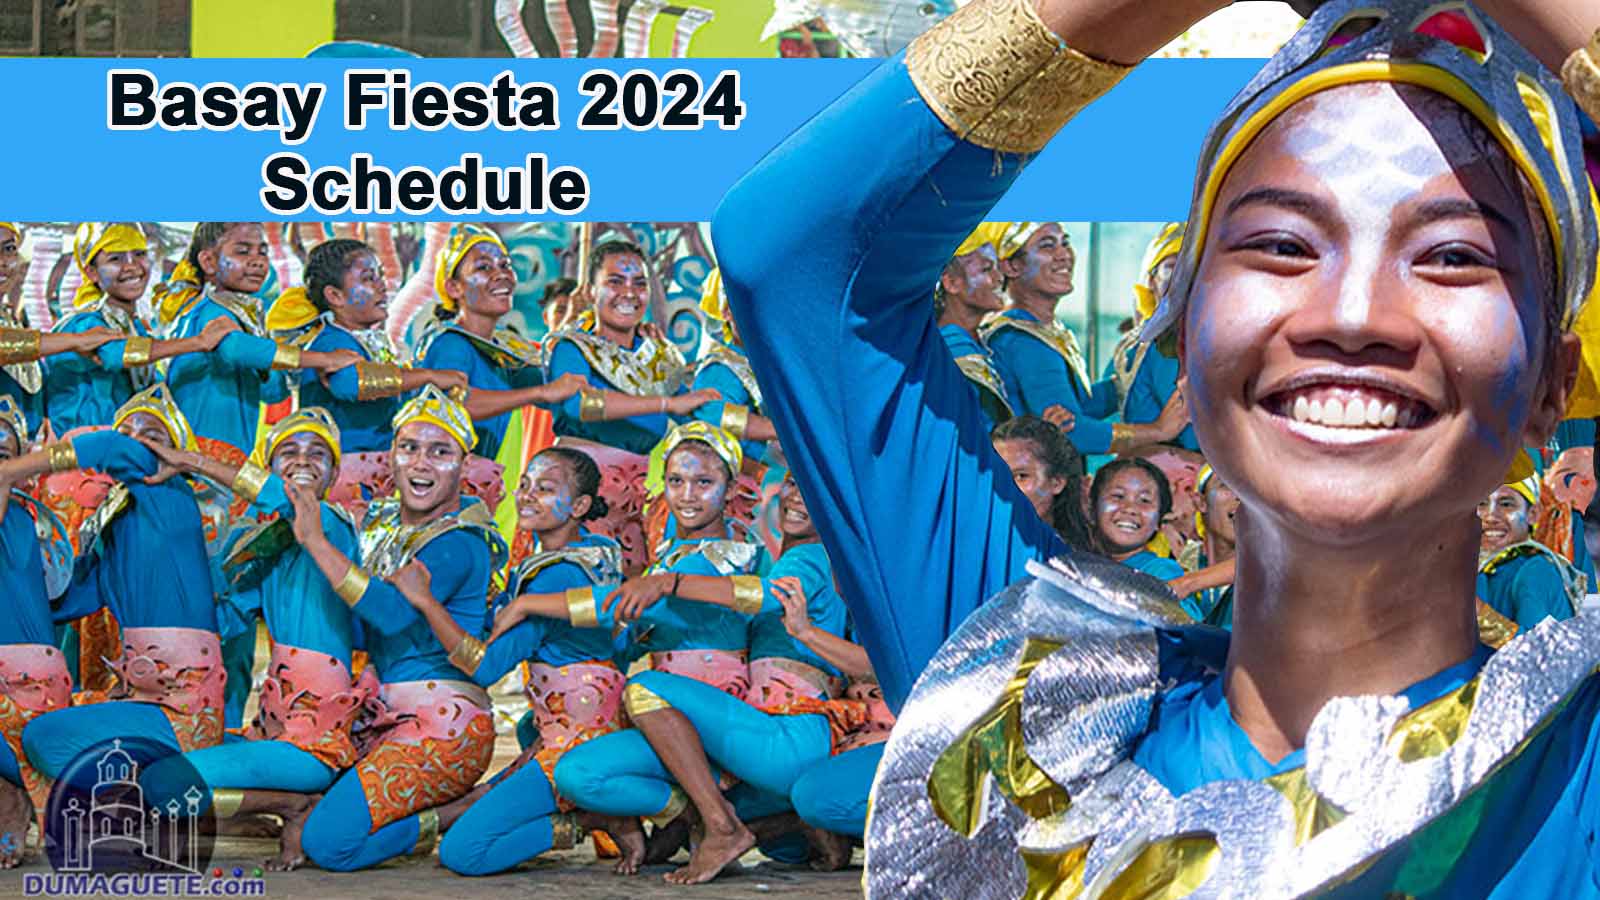 Basay Fiesta 2024 - Schedule of activities